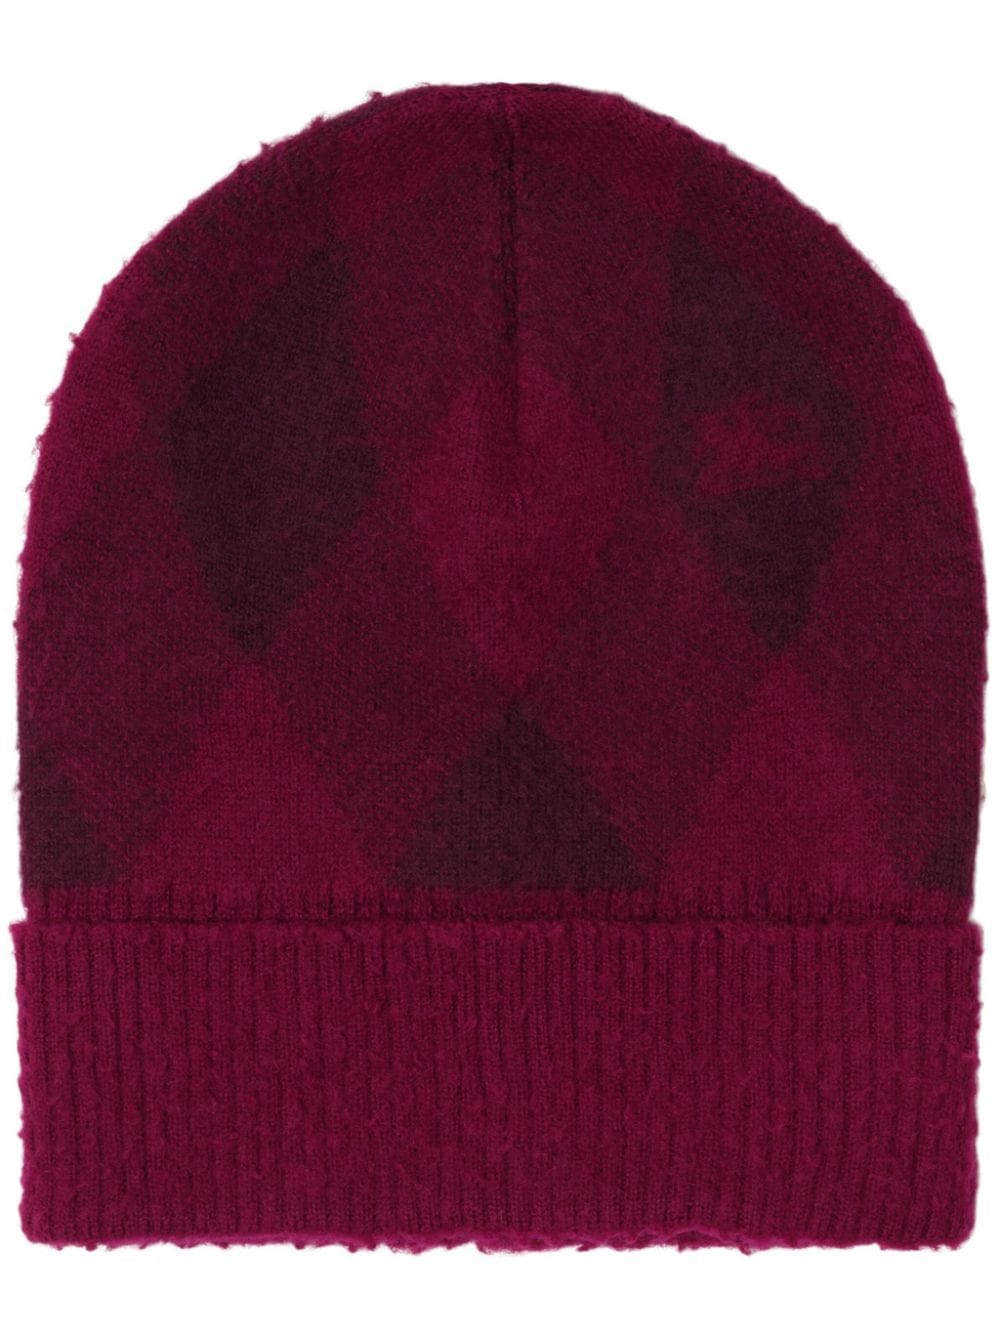 Burberry intarsia-knit logo argyle checked beanie - Red von Burberry